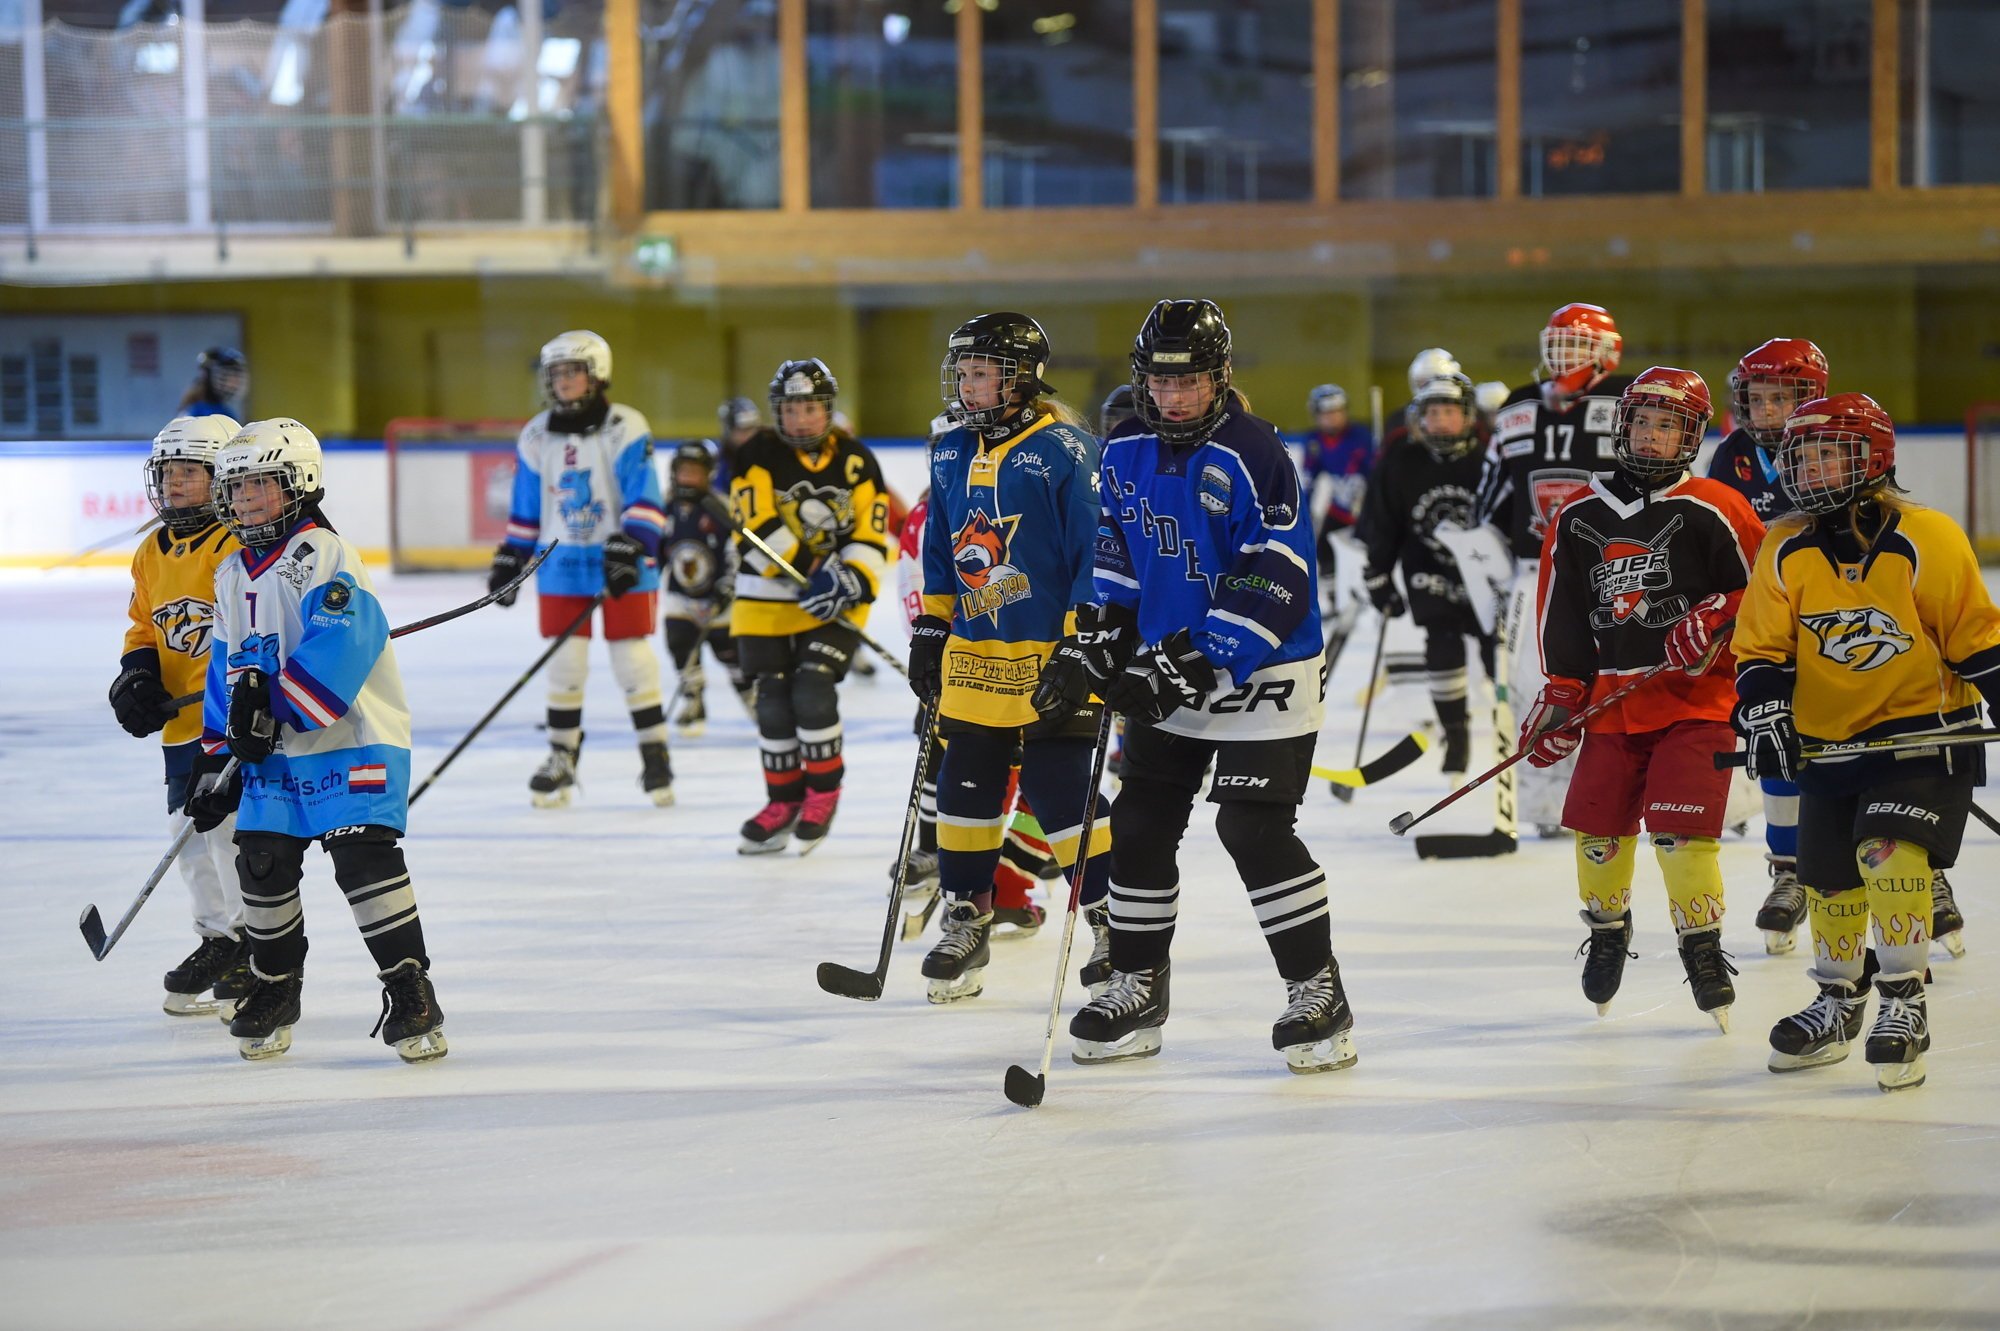 La journée a été chargée pour les jeunes hockeyeuses samedi 26 juin à Fleurier.